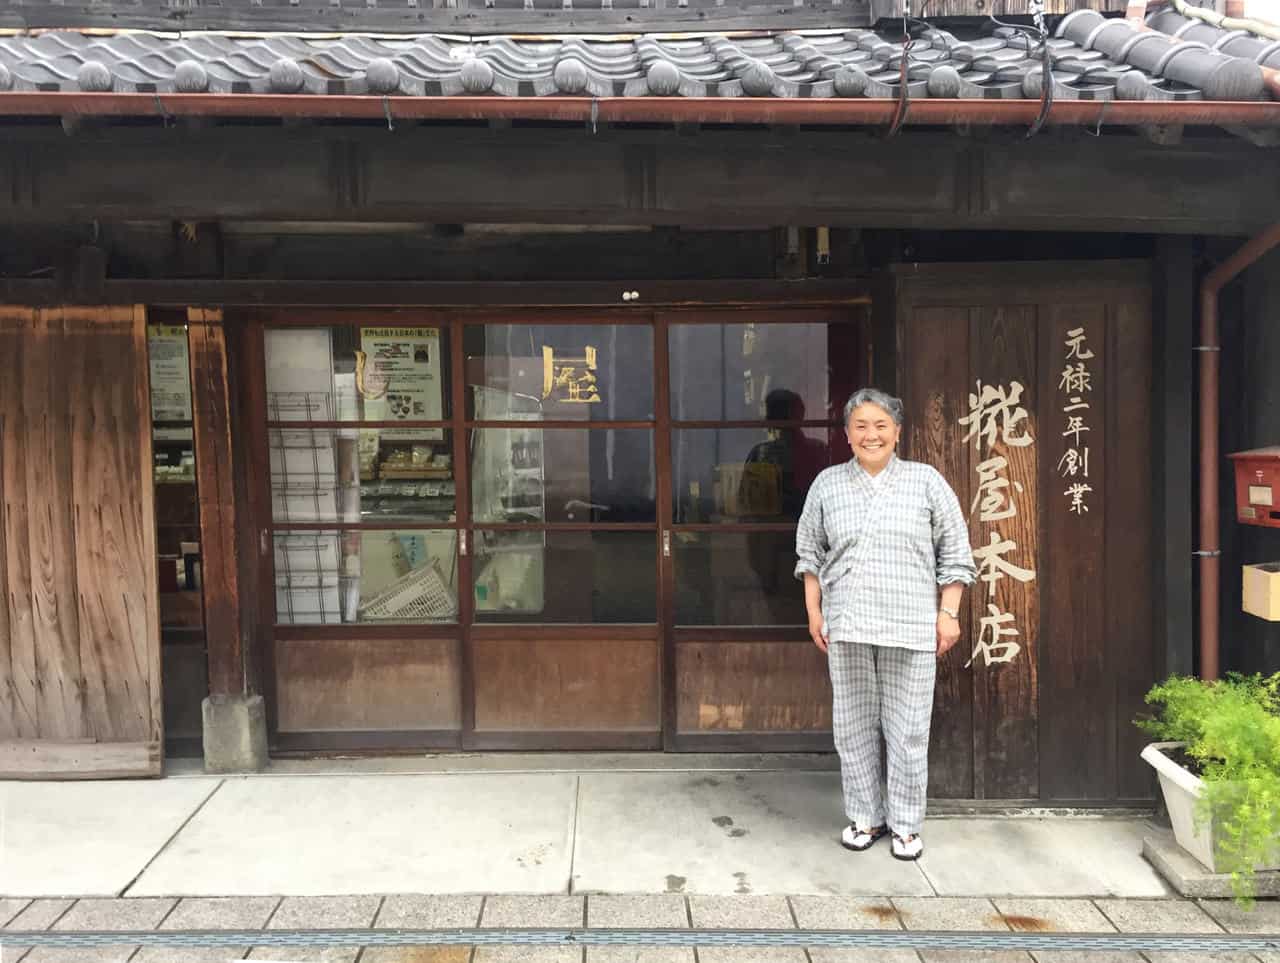 Découvertes culinaires à Saiki, préfecture d’Oita : cuisine biologique et koji